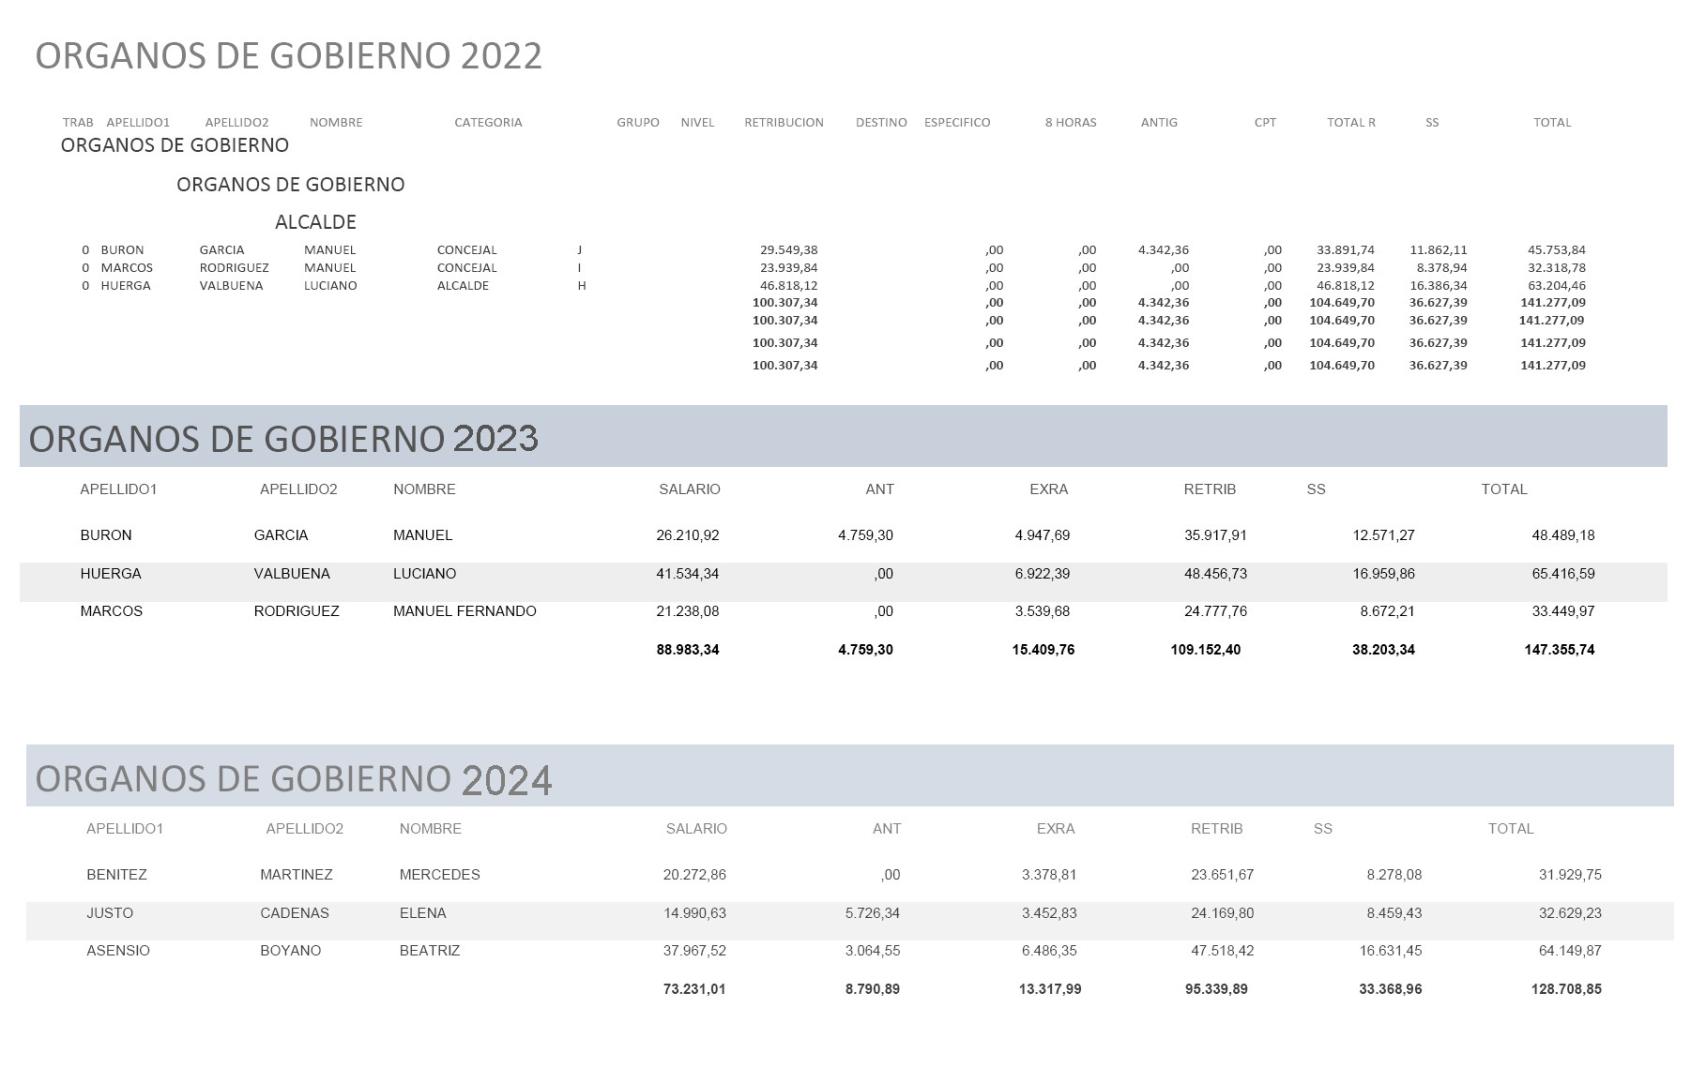 CUADRO COSTE ORGANOS GOBIERNO PSOE-IU 2022,2023, PP-VOX 2024